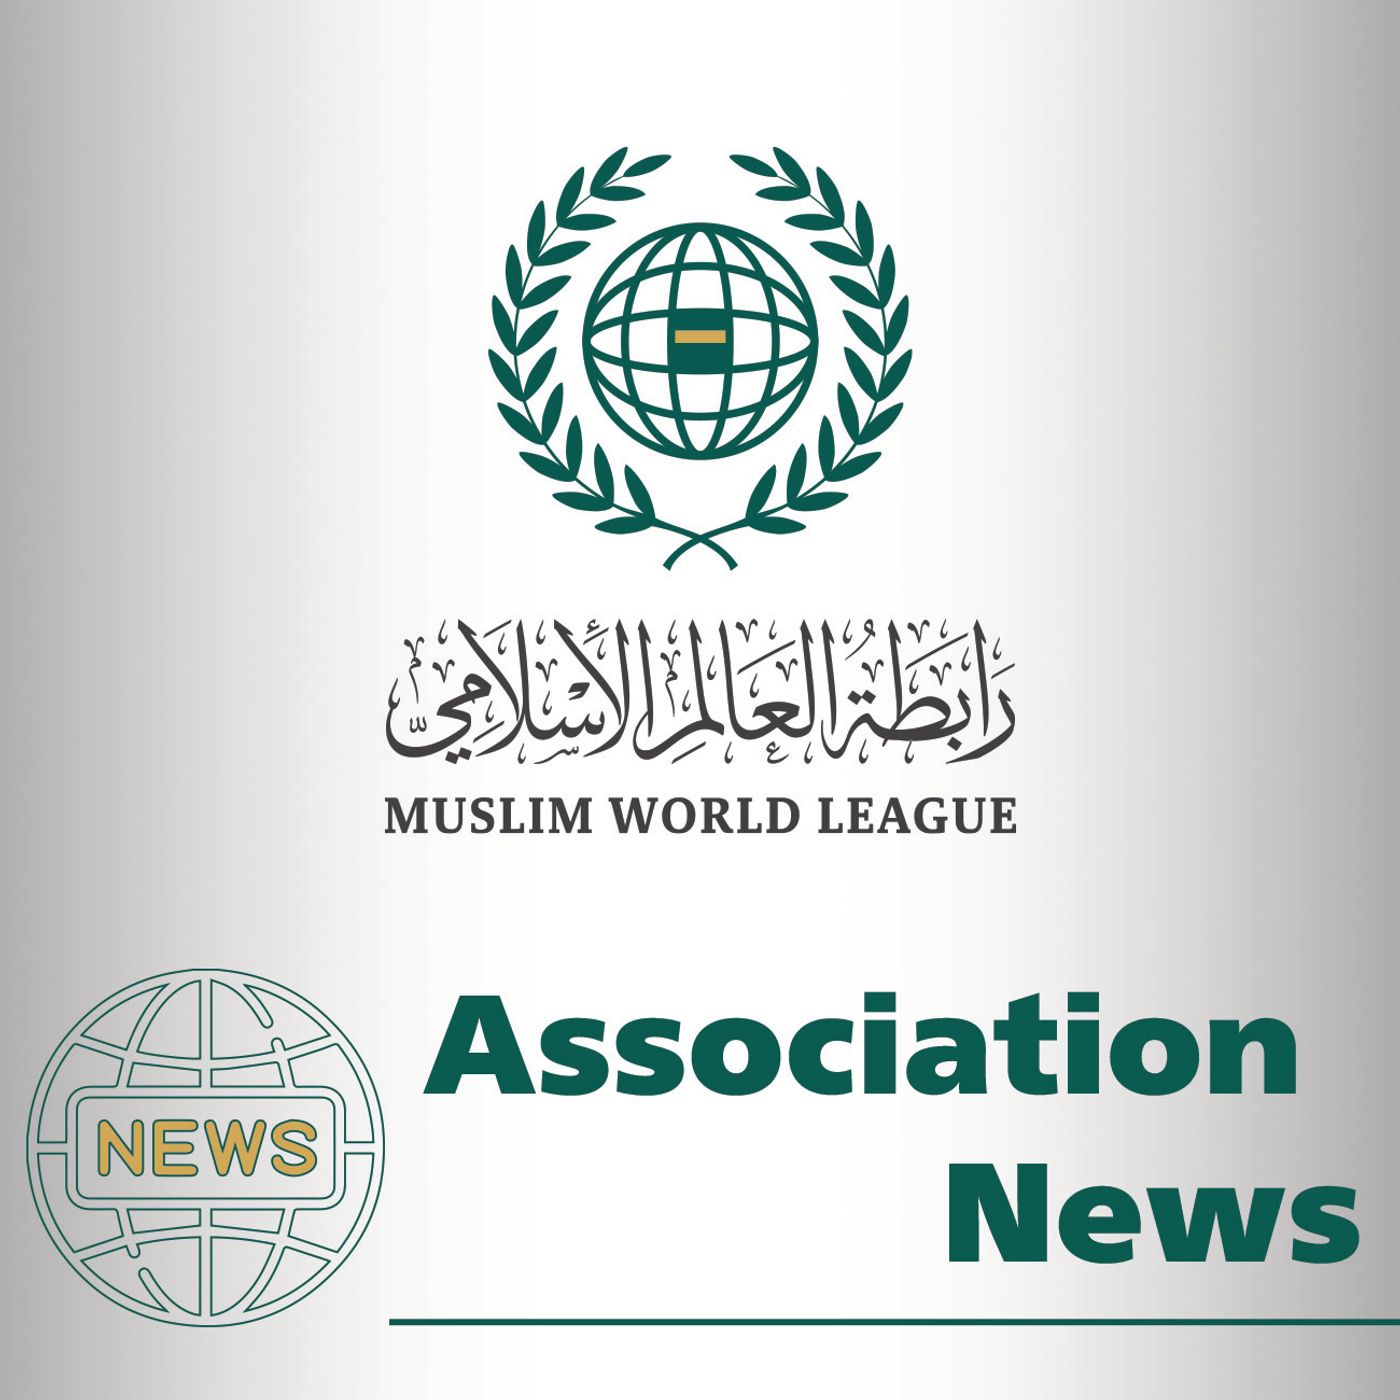 Association News